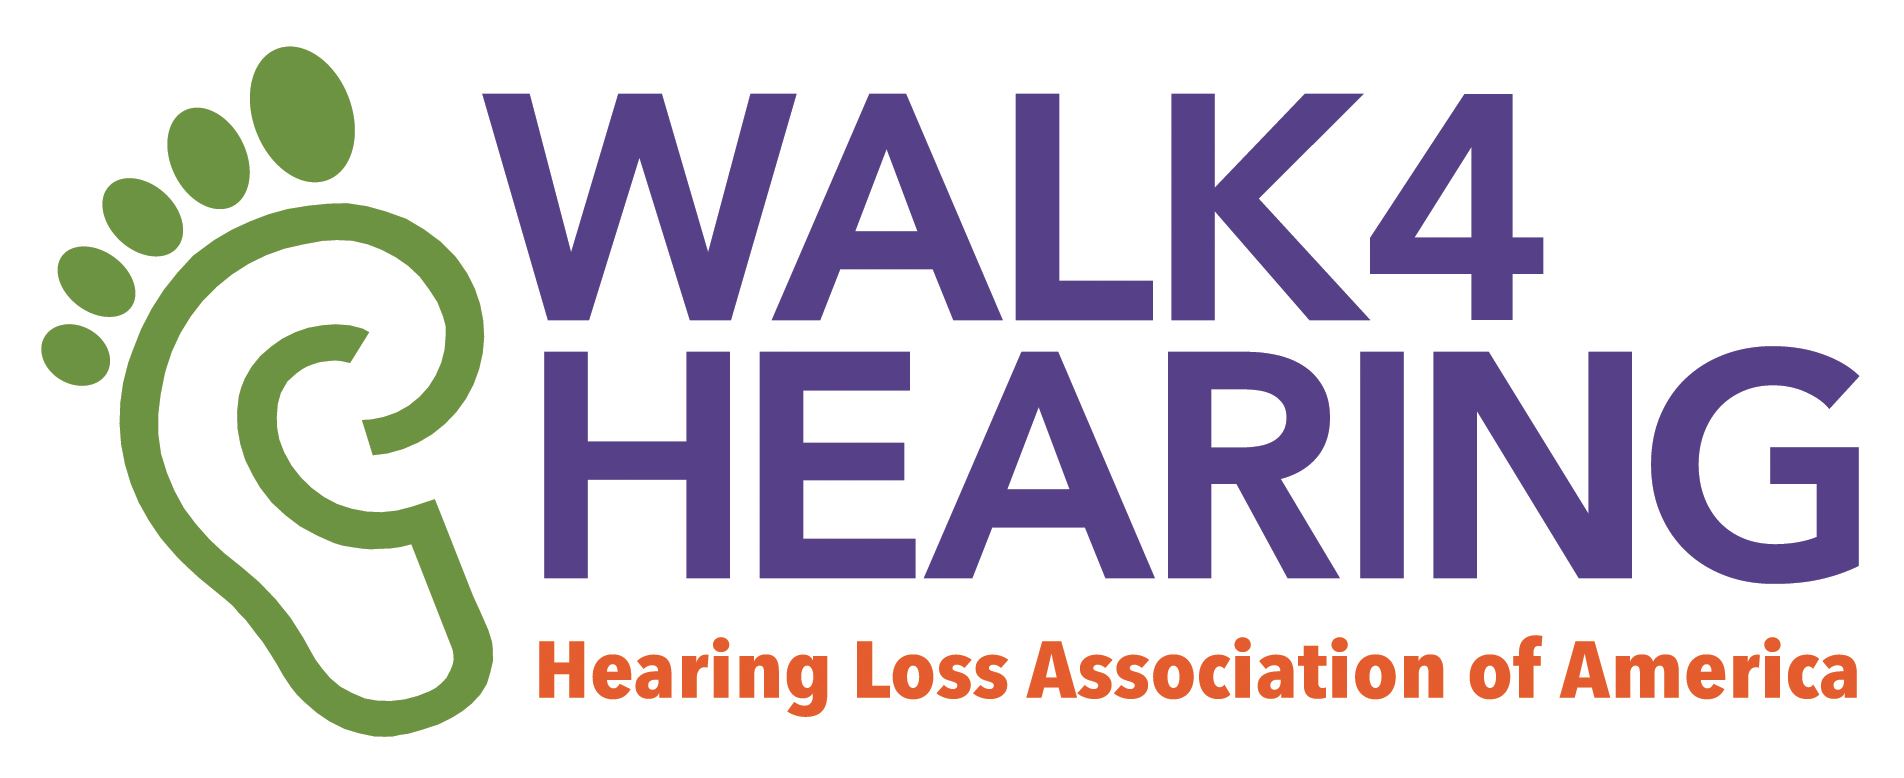 WALK4HEARING logo